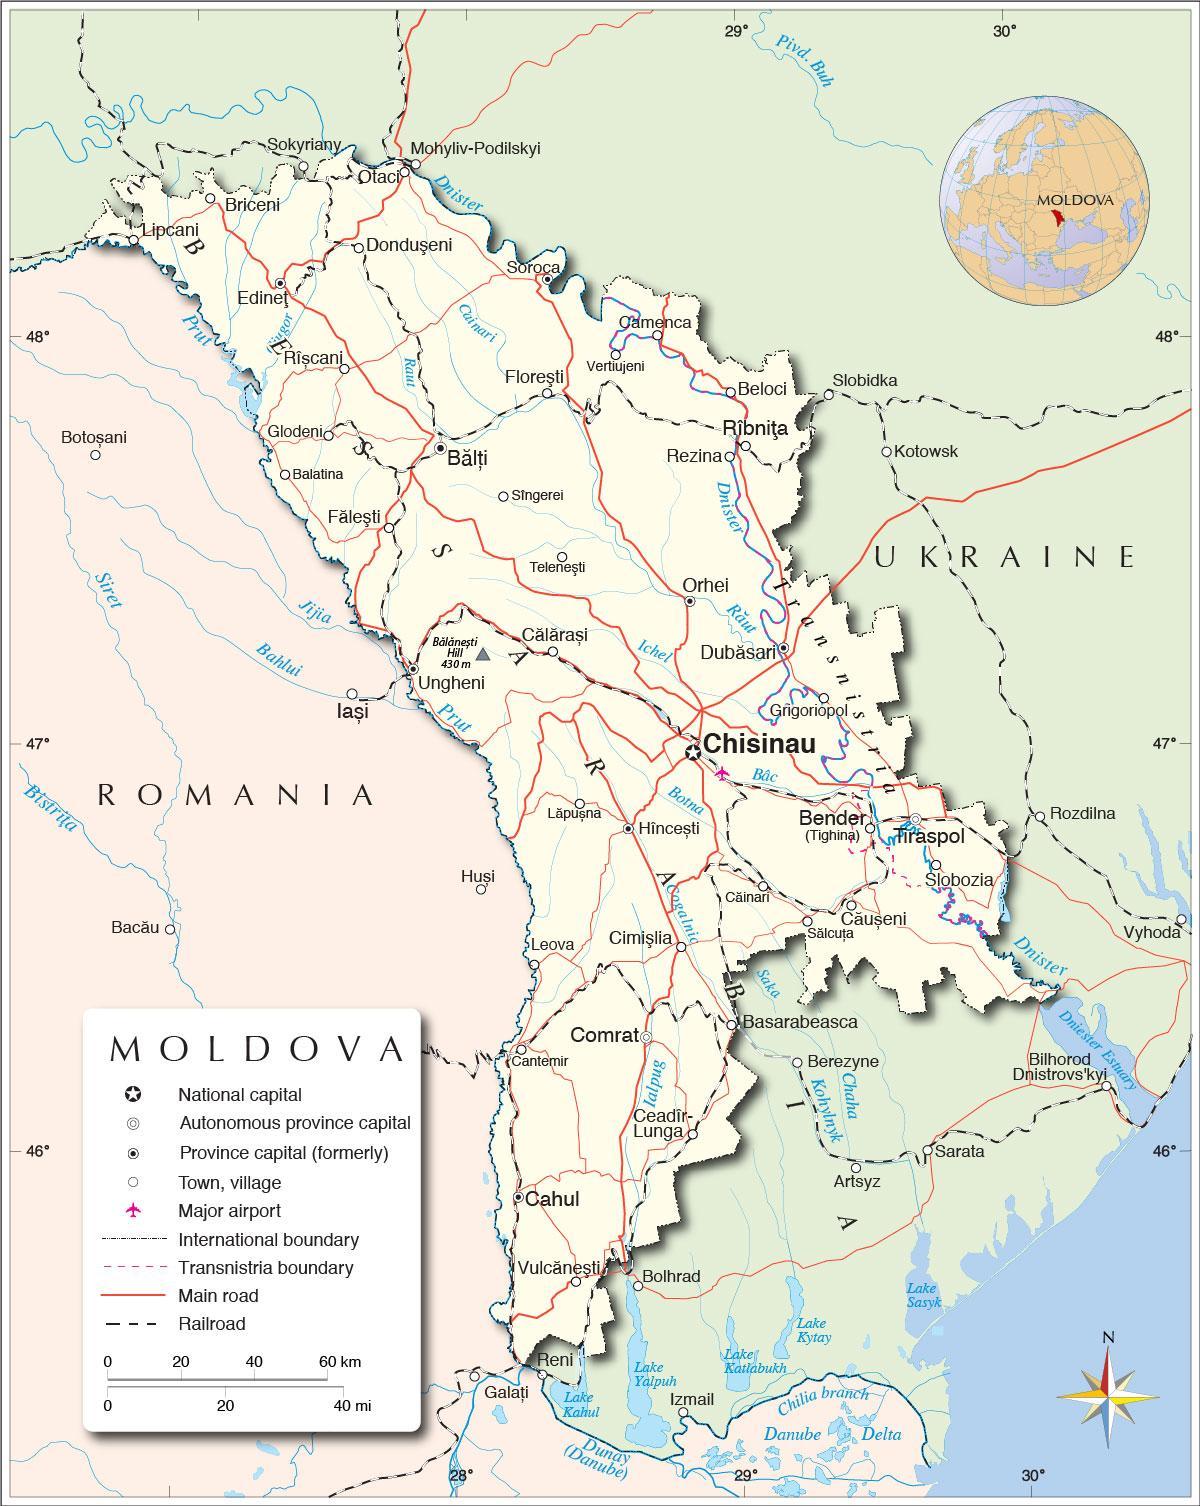 Mapa da república de Moldavia